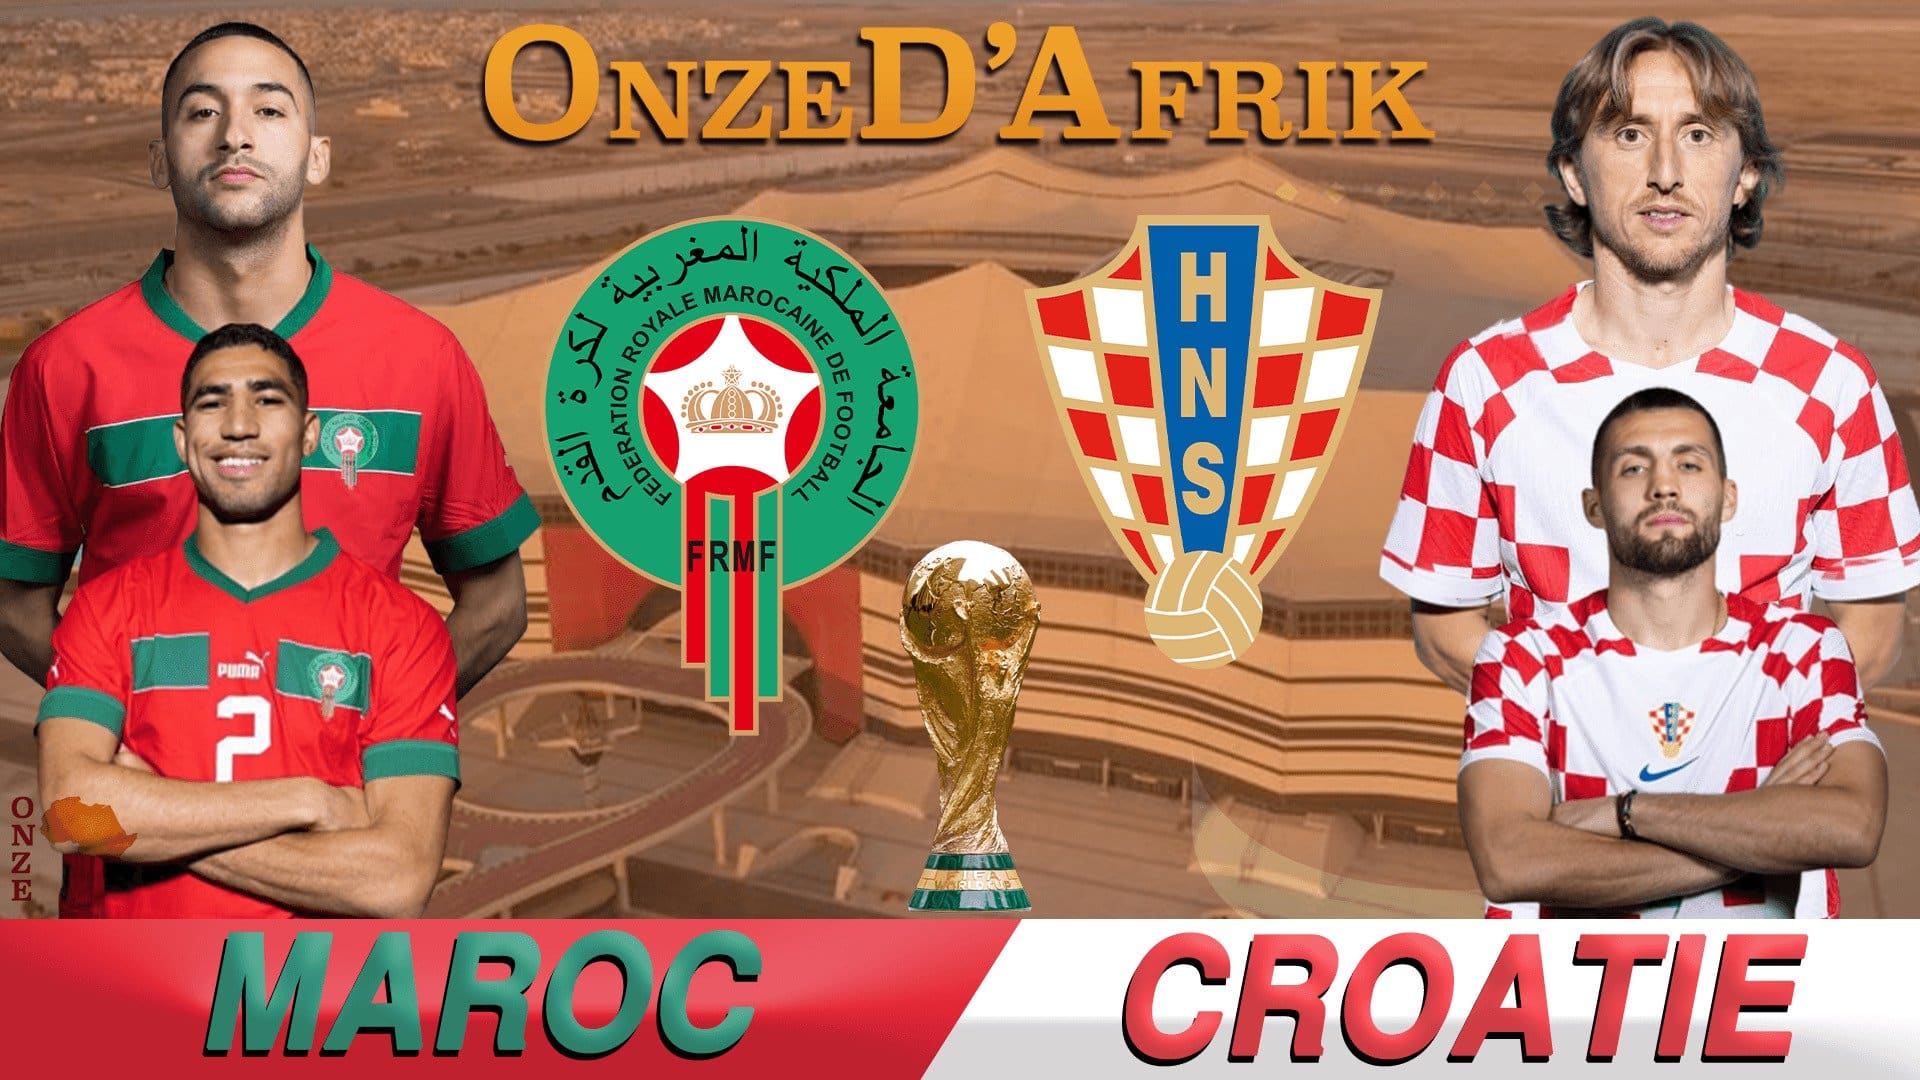 Maroc vs Croatie - OnzedAfrik